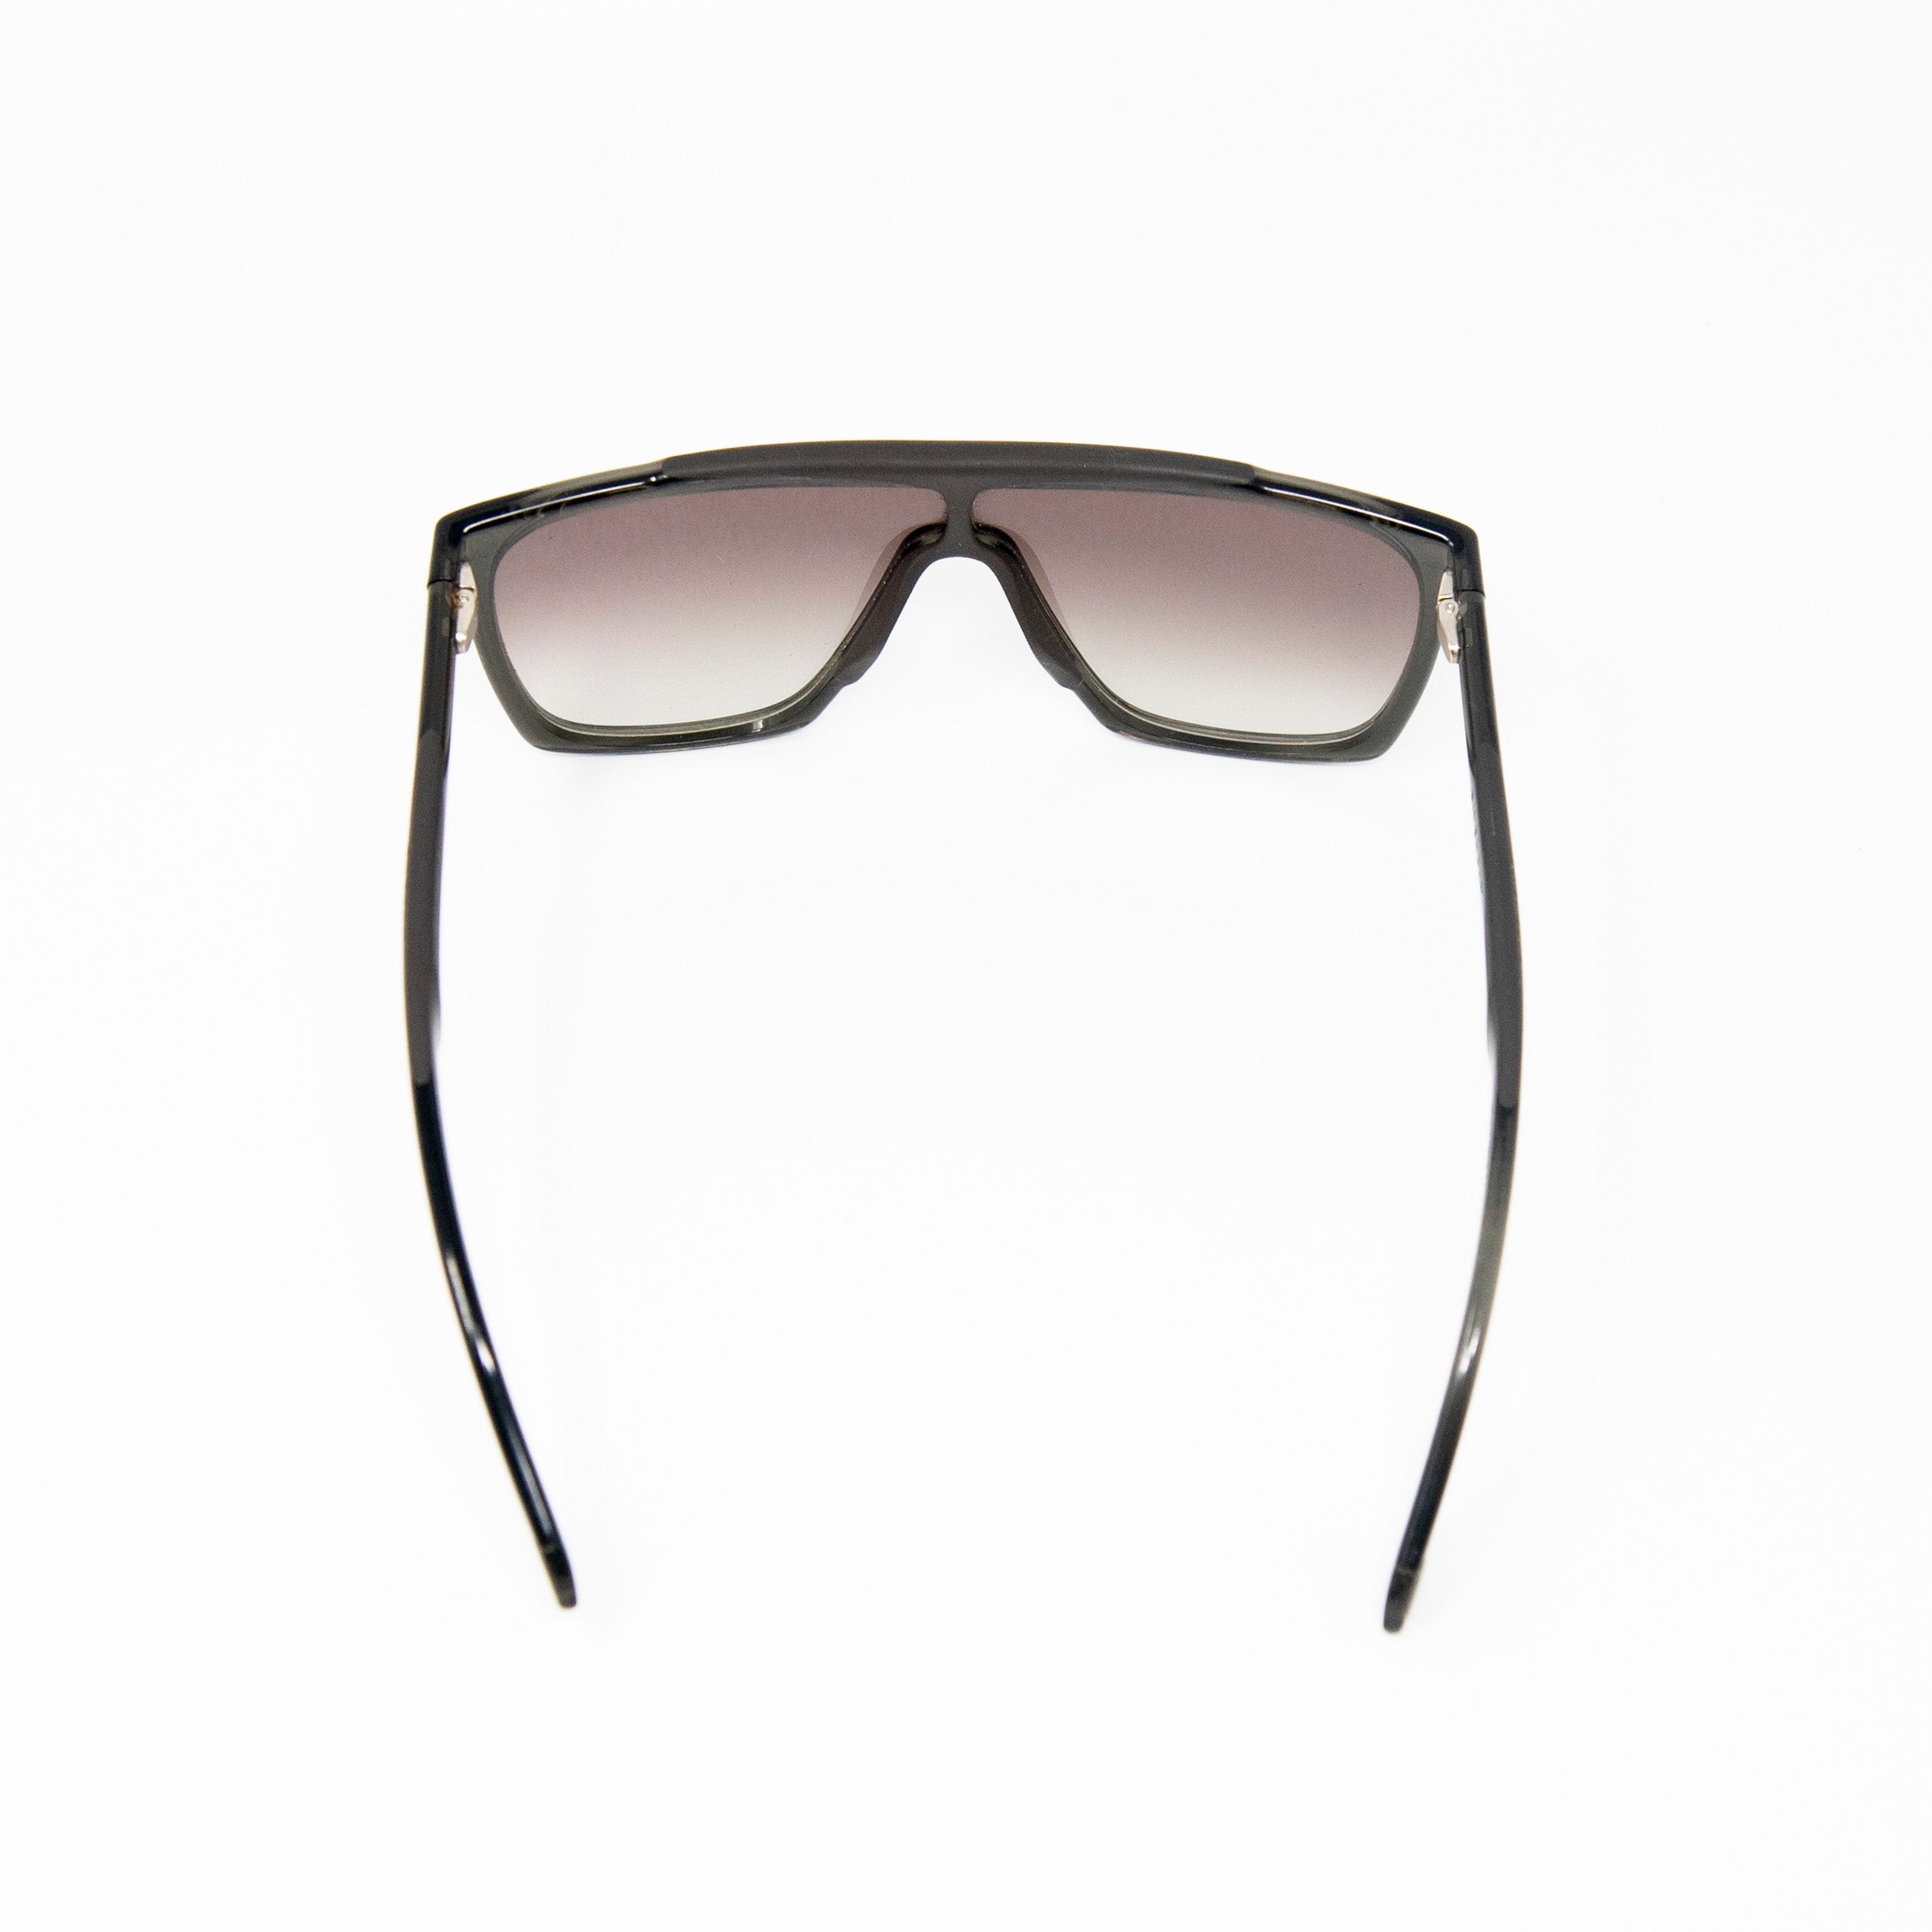 The Kravittz Sunglasses – Nomos-T